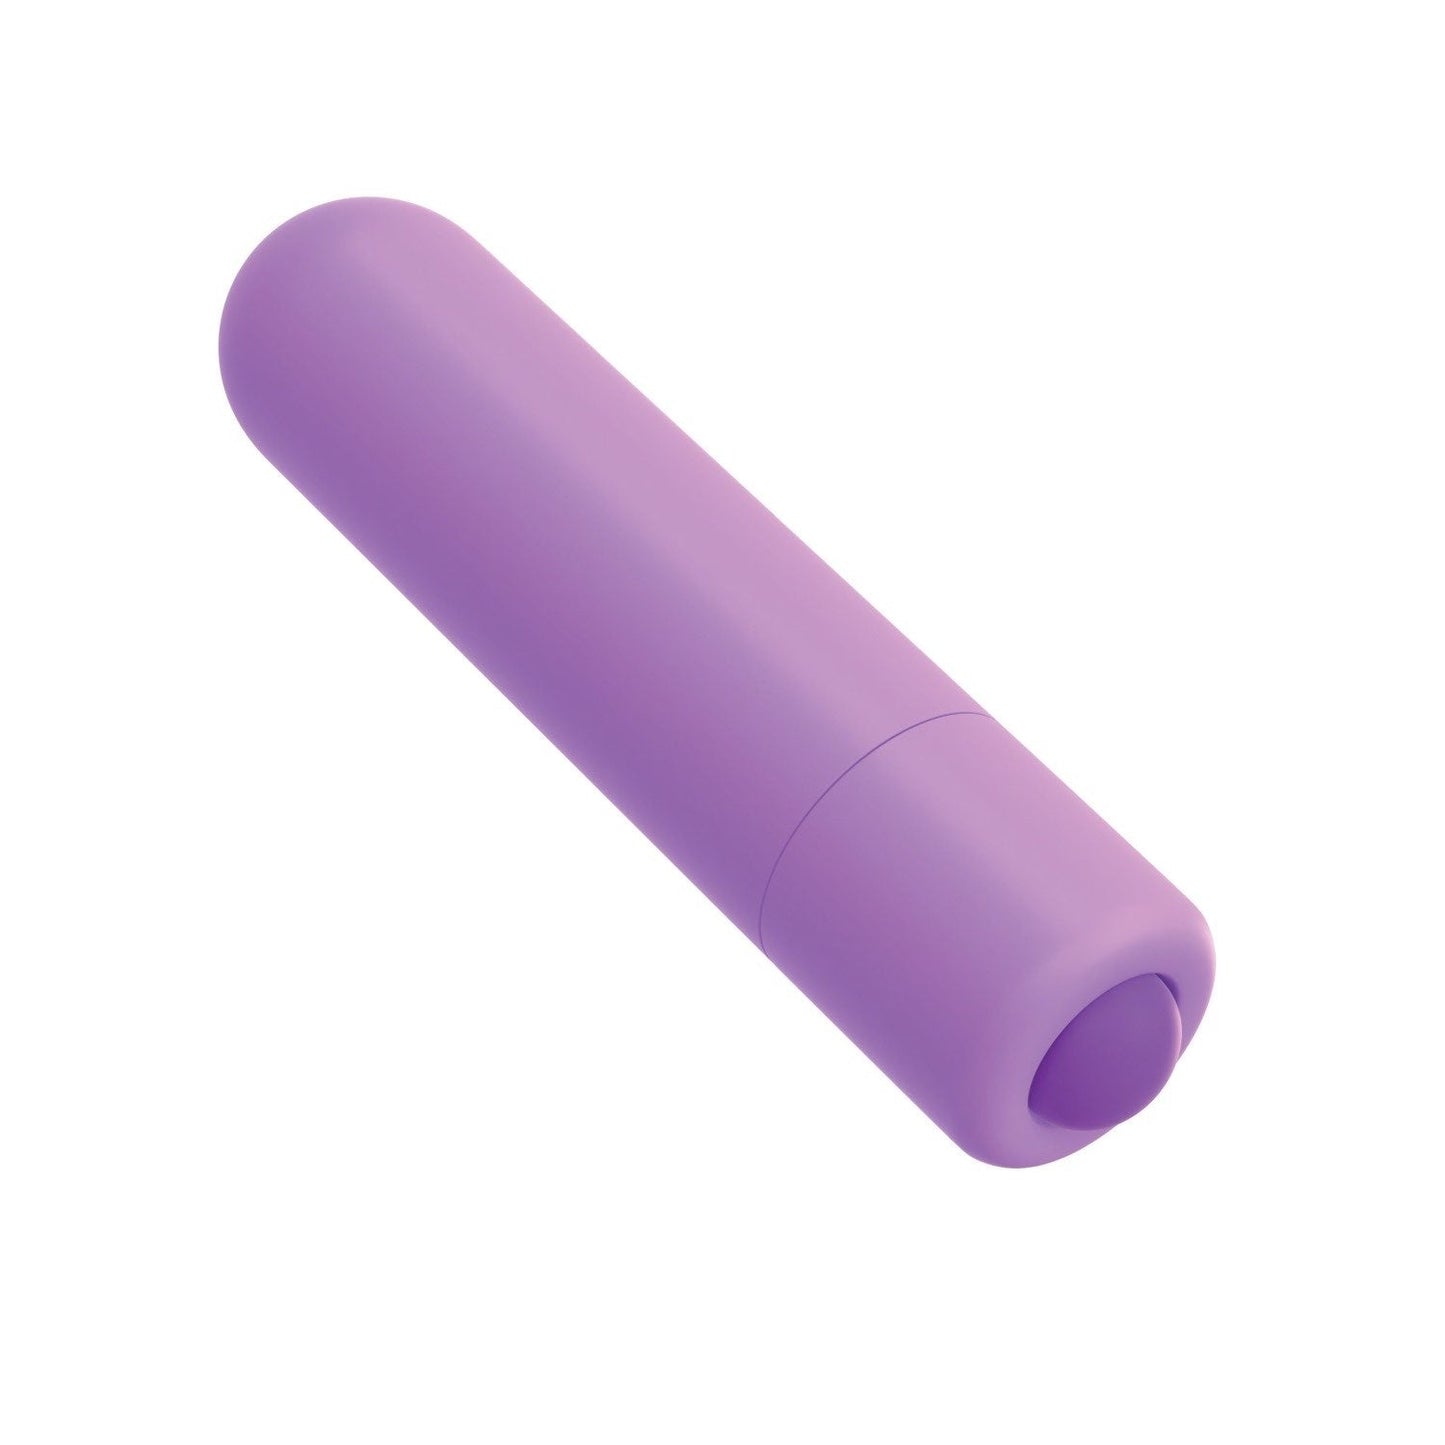 袖珍子弹头 - 紫色 9.4 厘米（3.75 英寸）子弹头